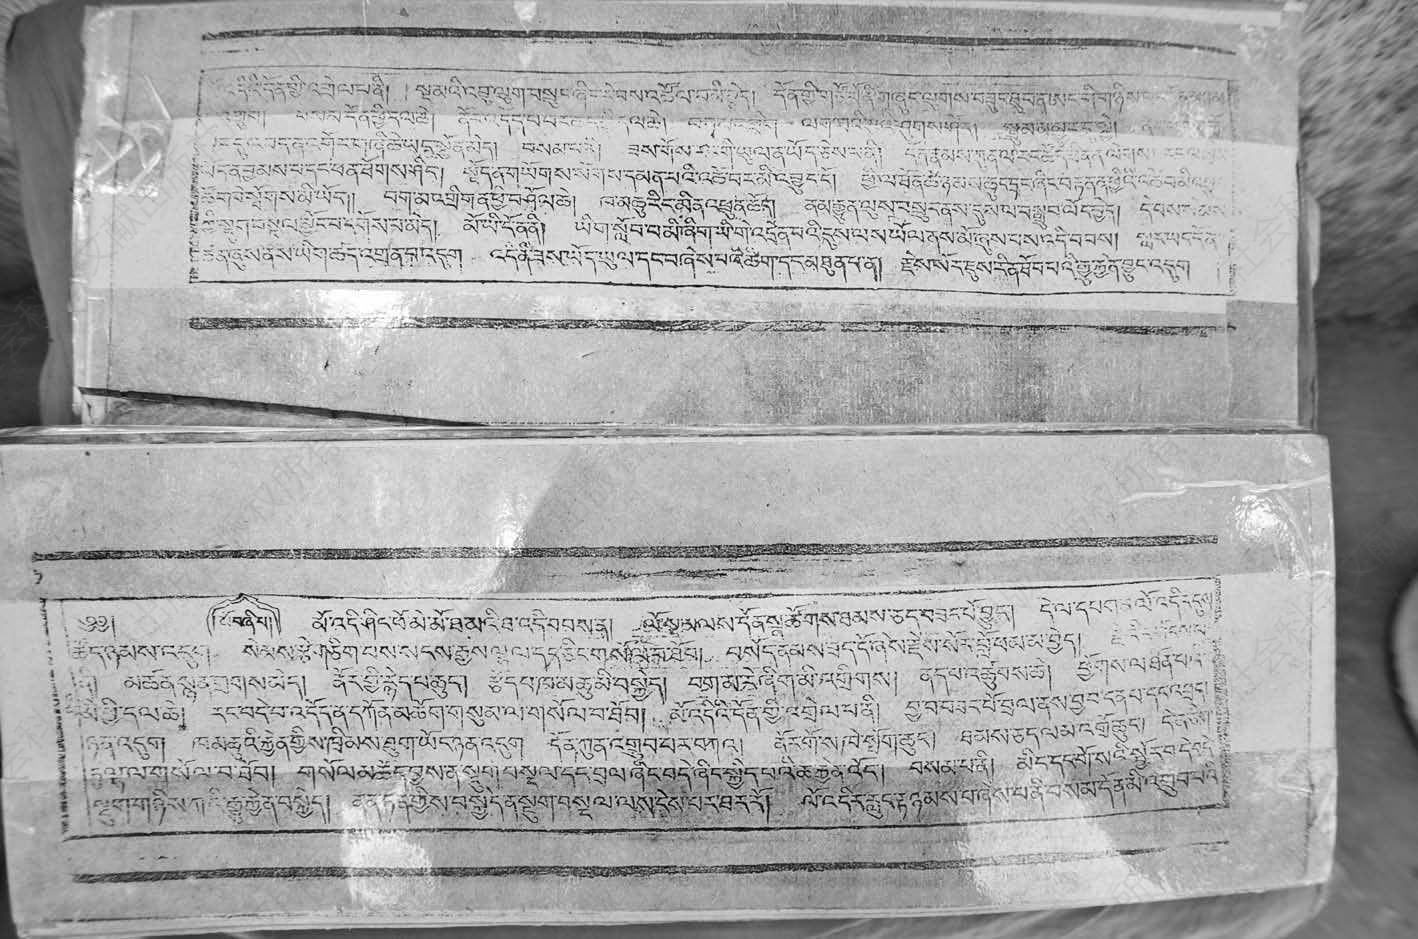 功德林寺馆藏藏文蓝本《威慑俱全真日杰布之三界明镜灵签》第三、四签的签文（笔者摄于2014年2月10日）